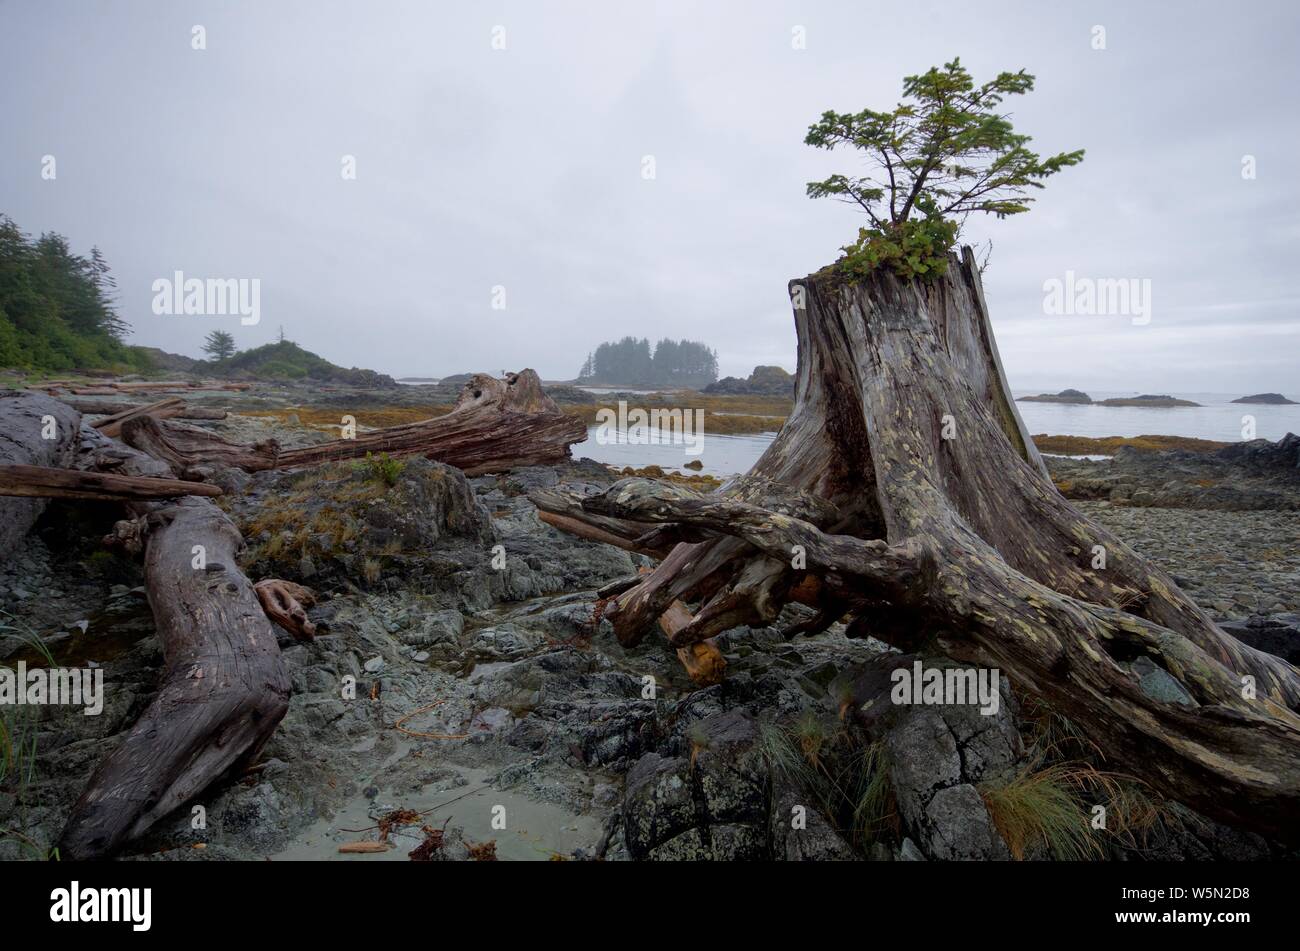 Un abete albero cresce al di fuori di un moncone driftwood sulla spiaggia rocciosa di uno dei Bunsby isole al largo della costa occidentale dell'isola di Vancouver, British Columbia. Foto Stock